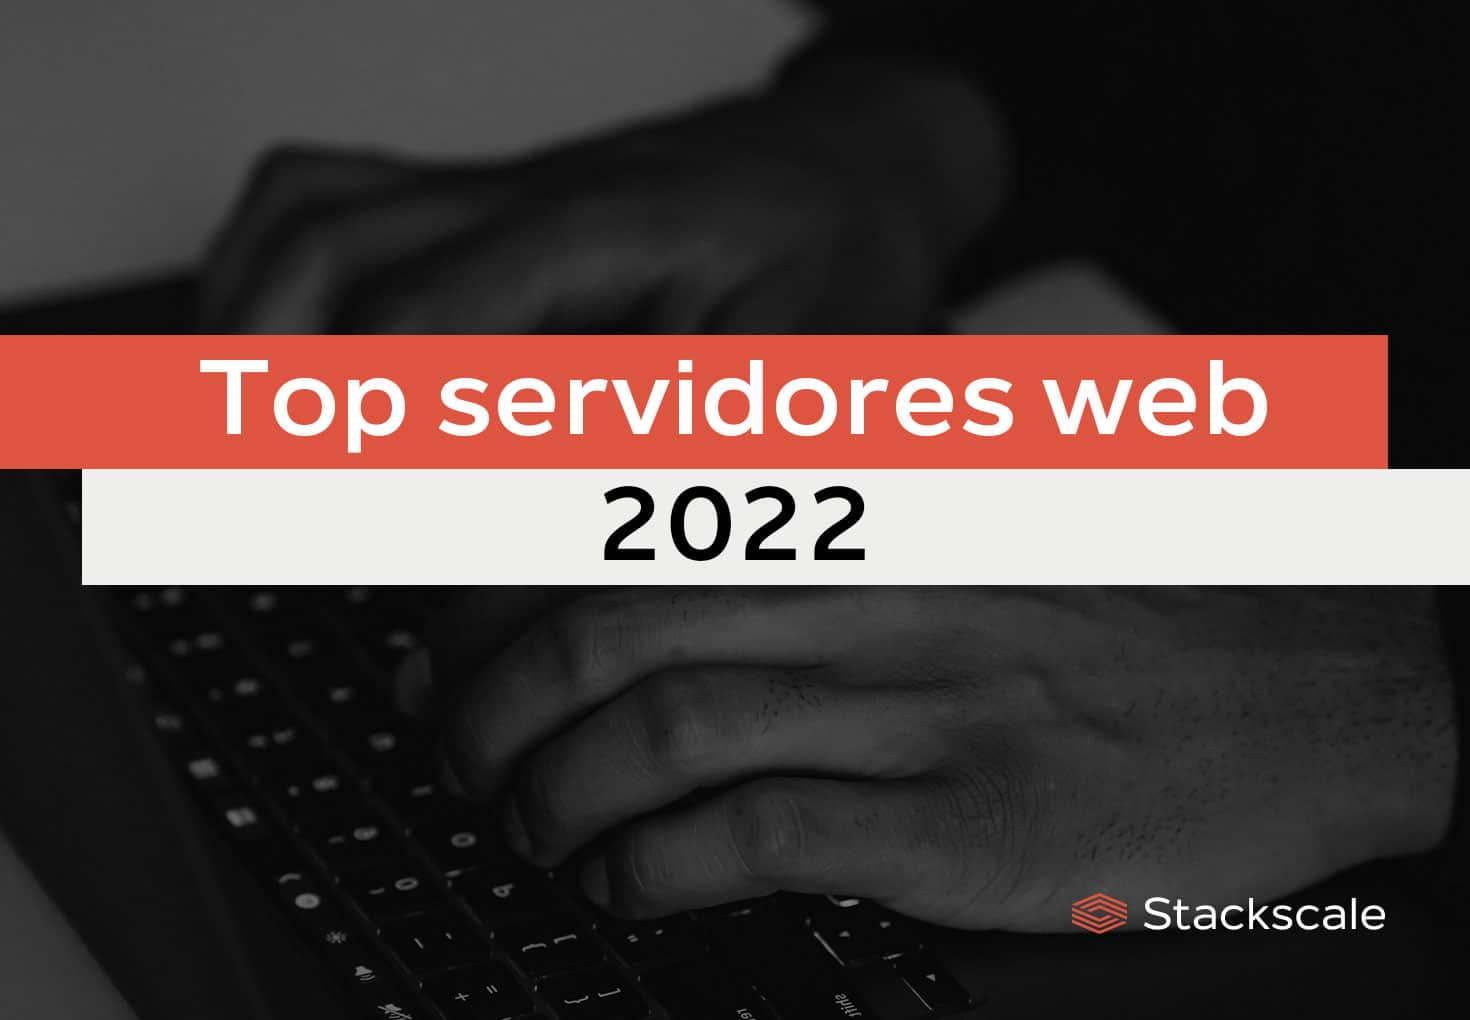 Top servidores web 2022